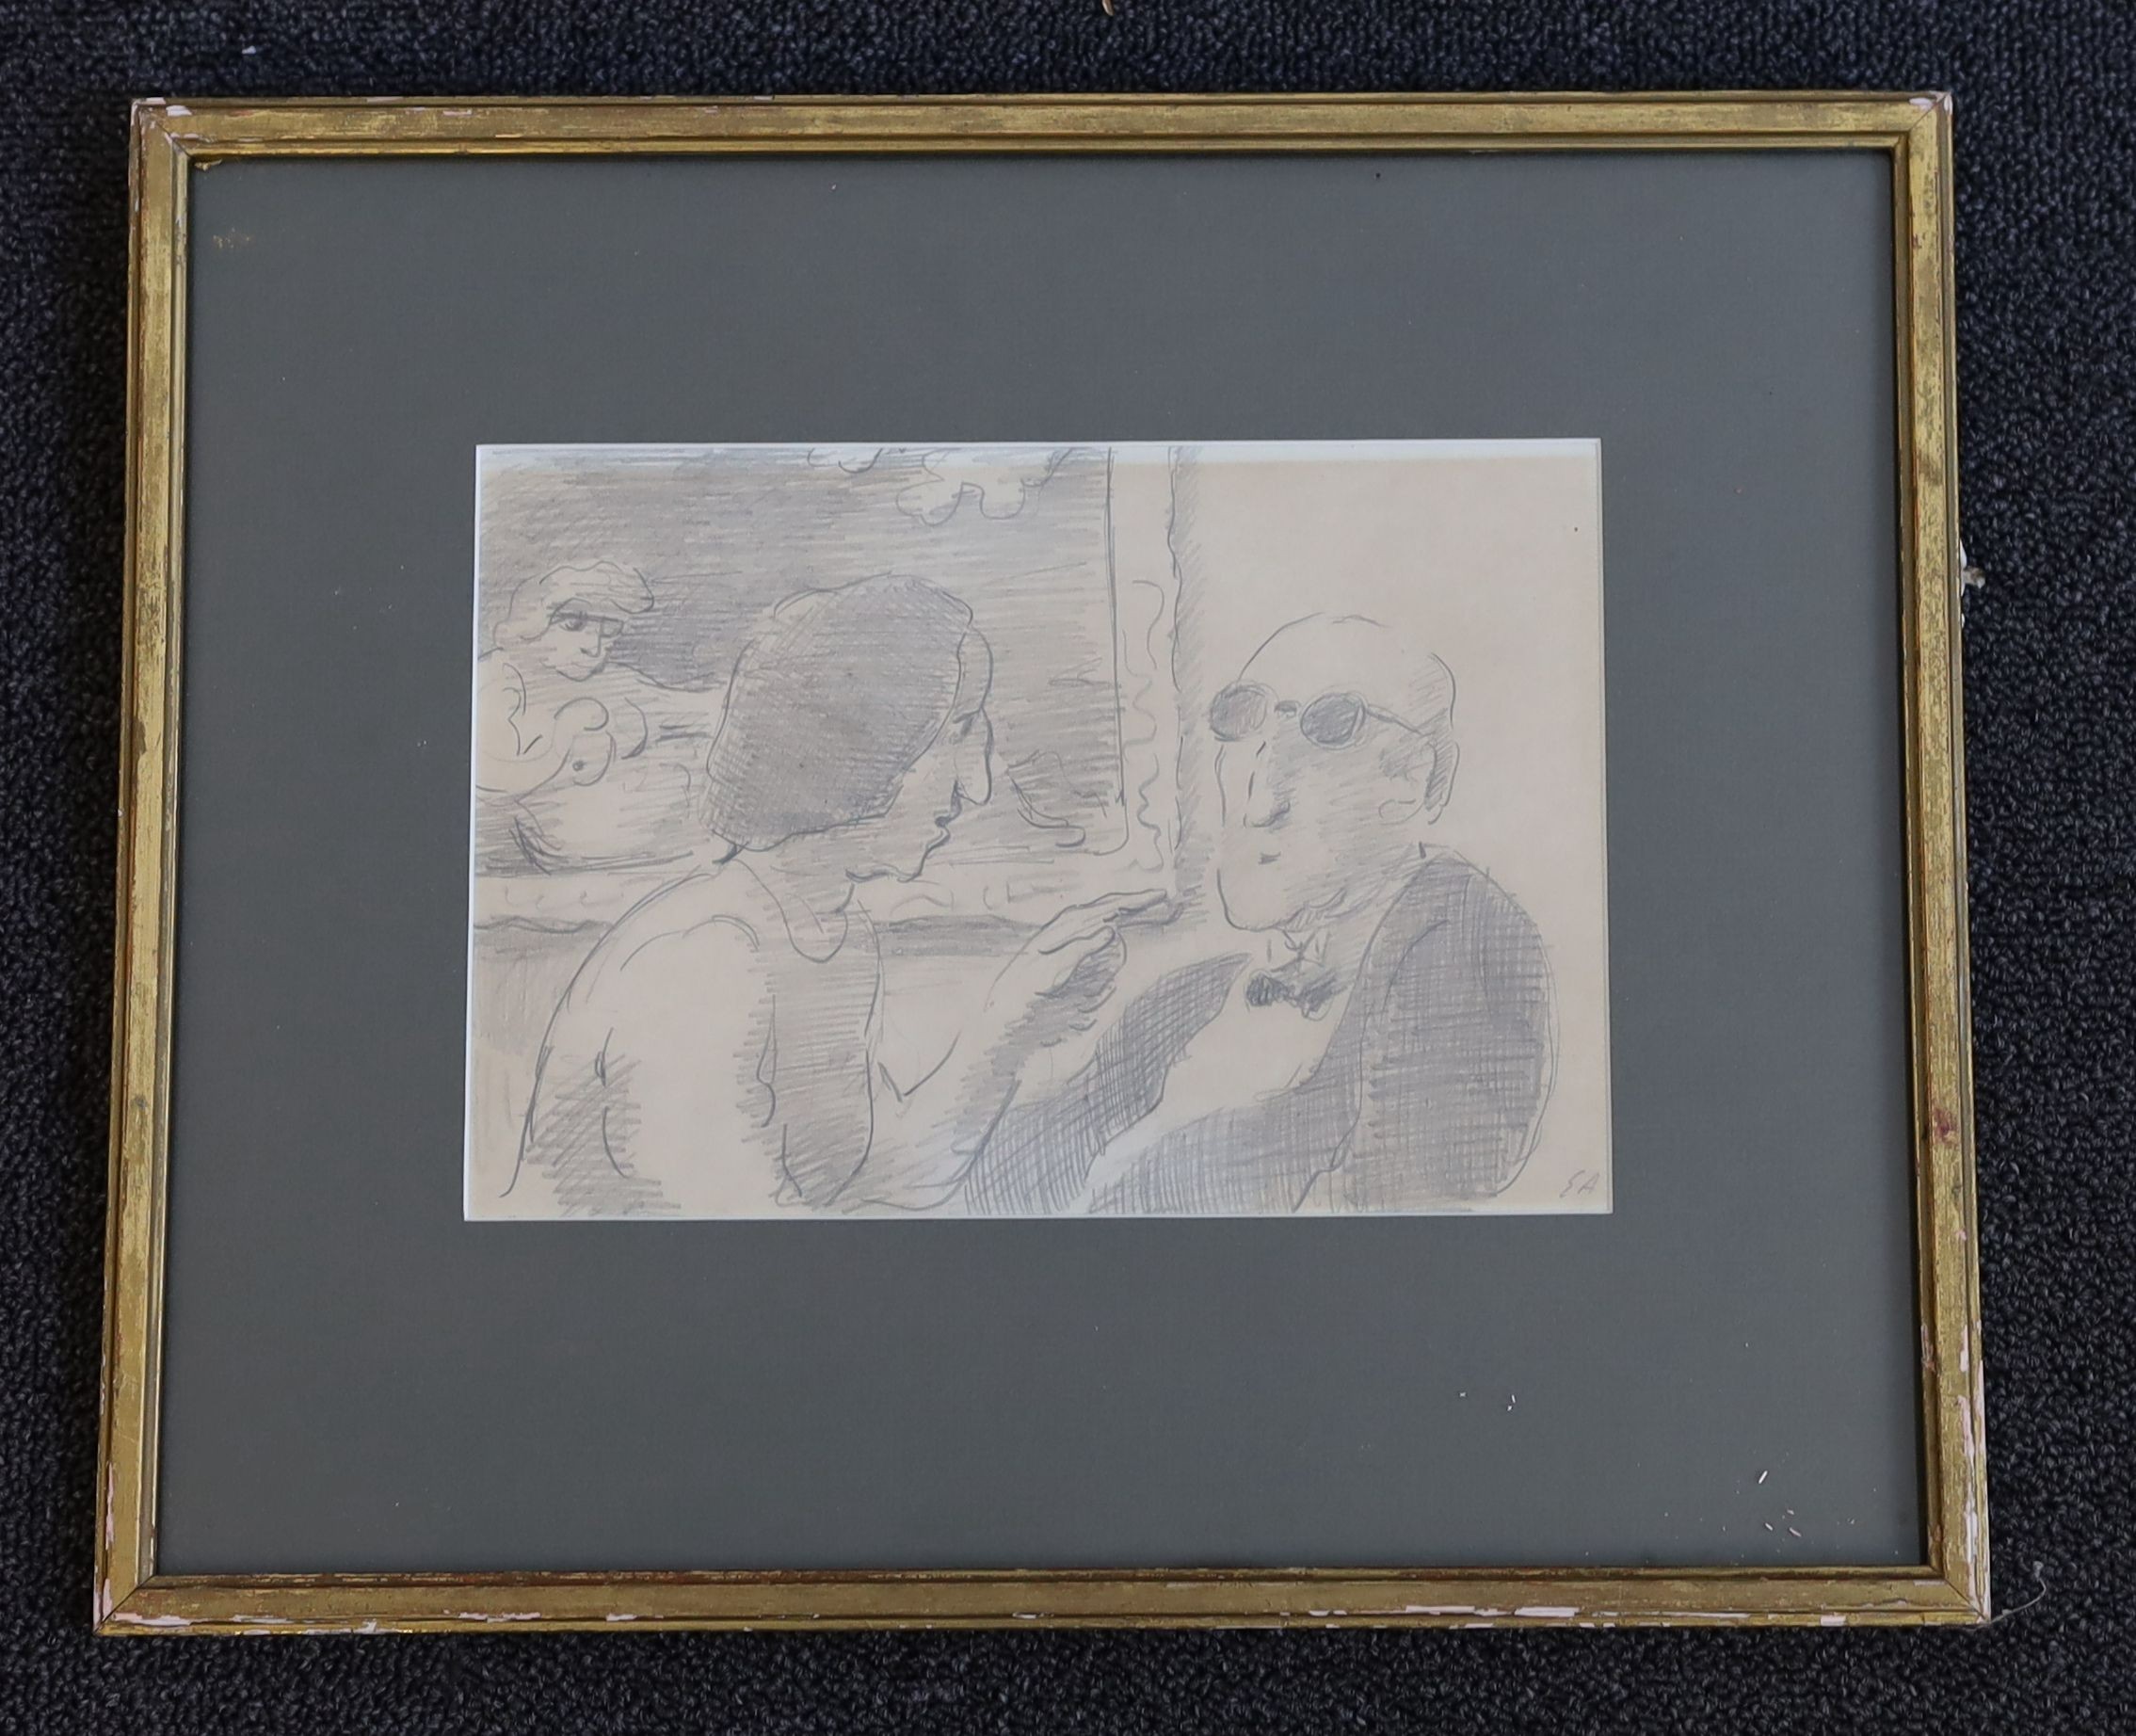 Edward Ardizzone R.A. (1900-1979), 'Argument', pencil on paper, 16 x 23.5cm